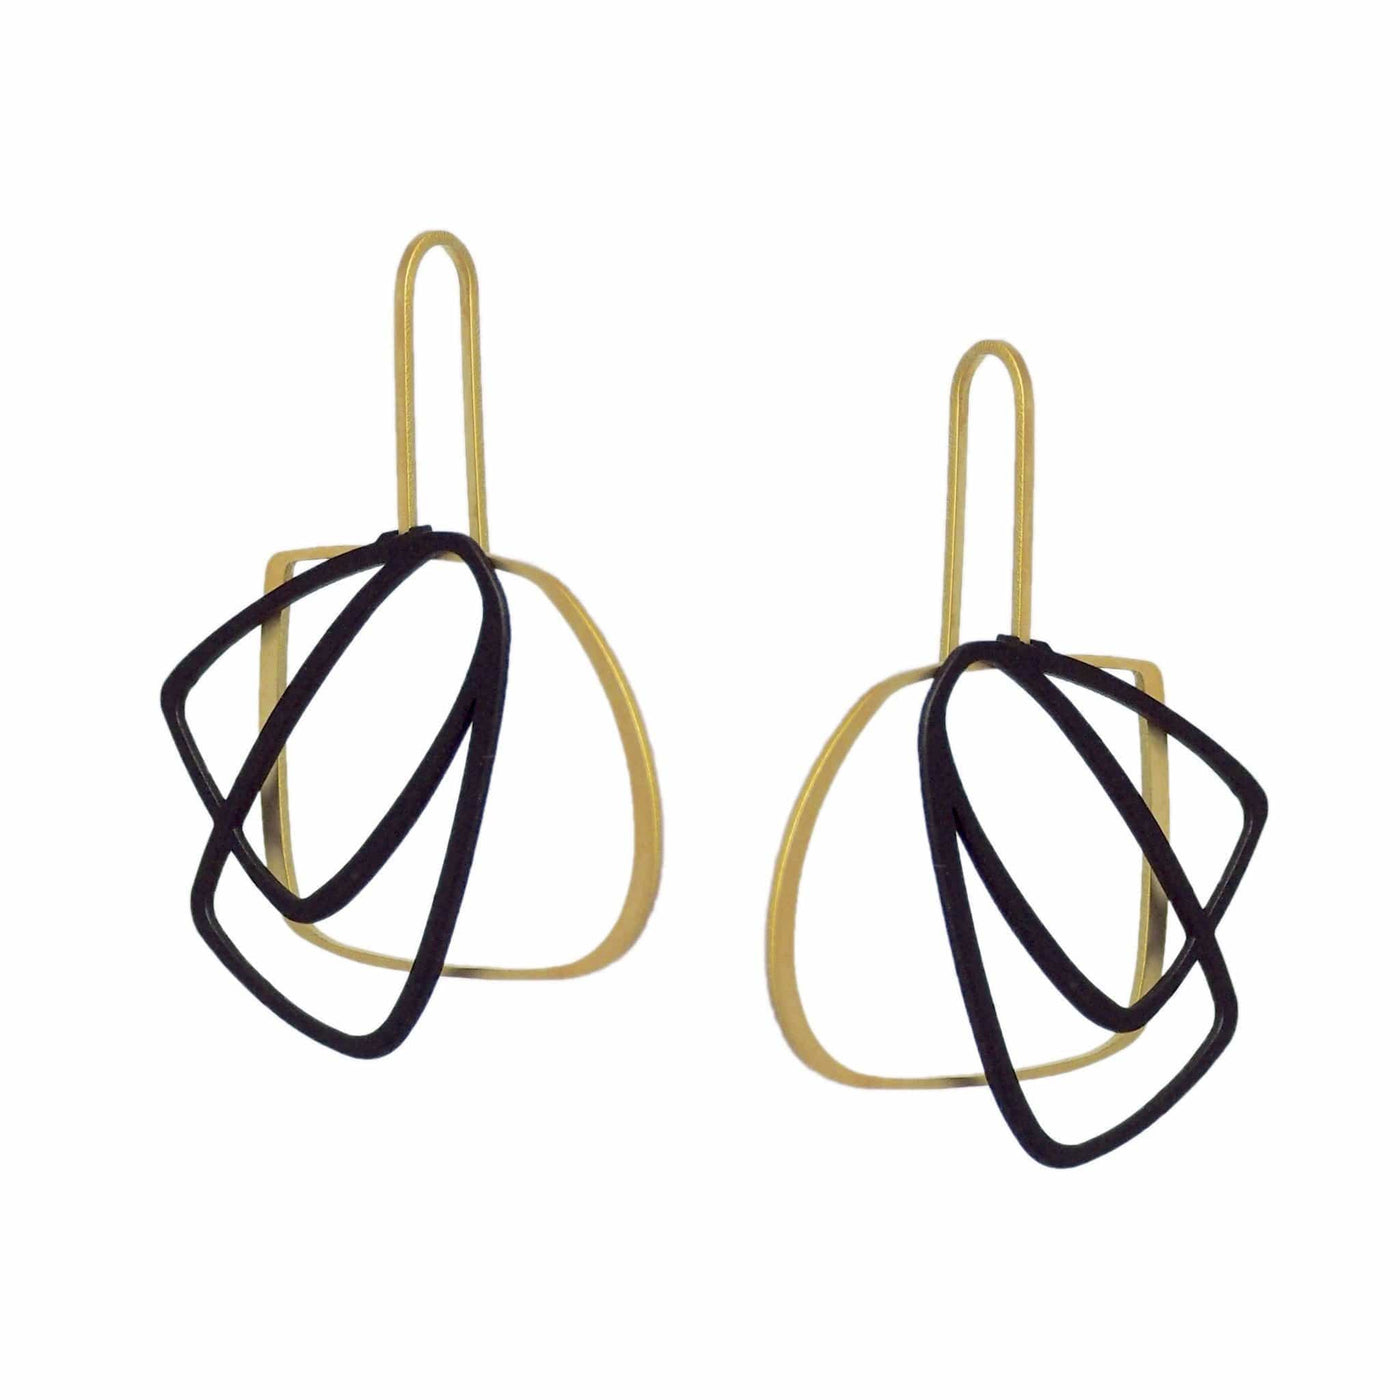 X2 Medium Outline Earrings - Gold/ Black - inSync design